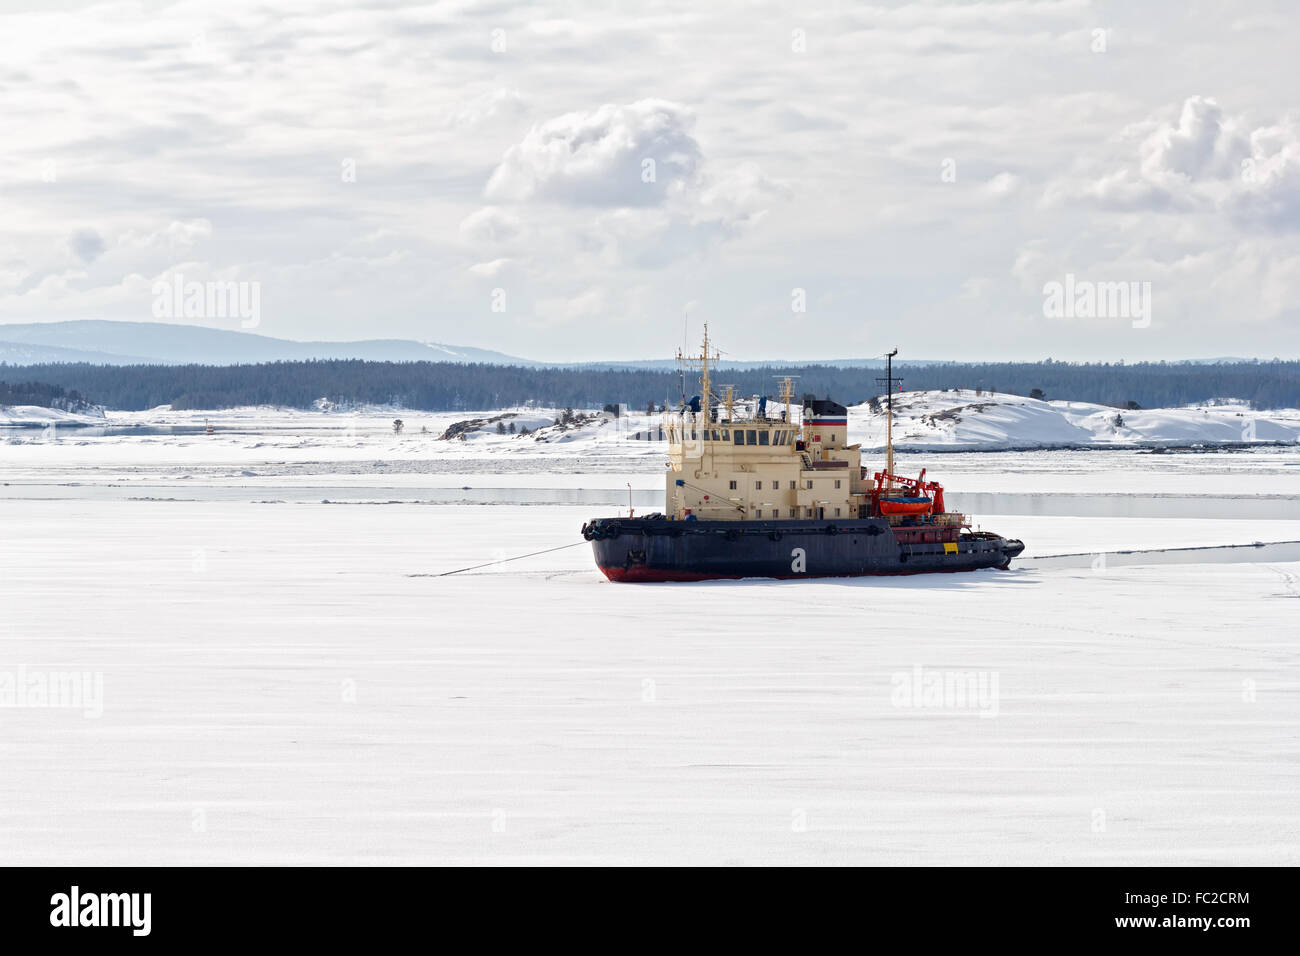 Icebreaker in the White Sea, Russia Stock Photo